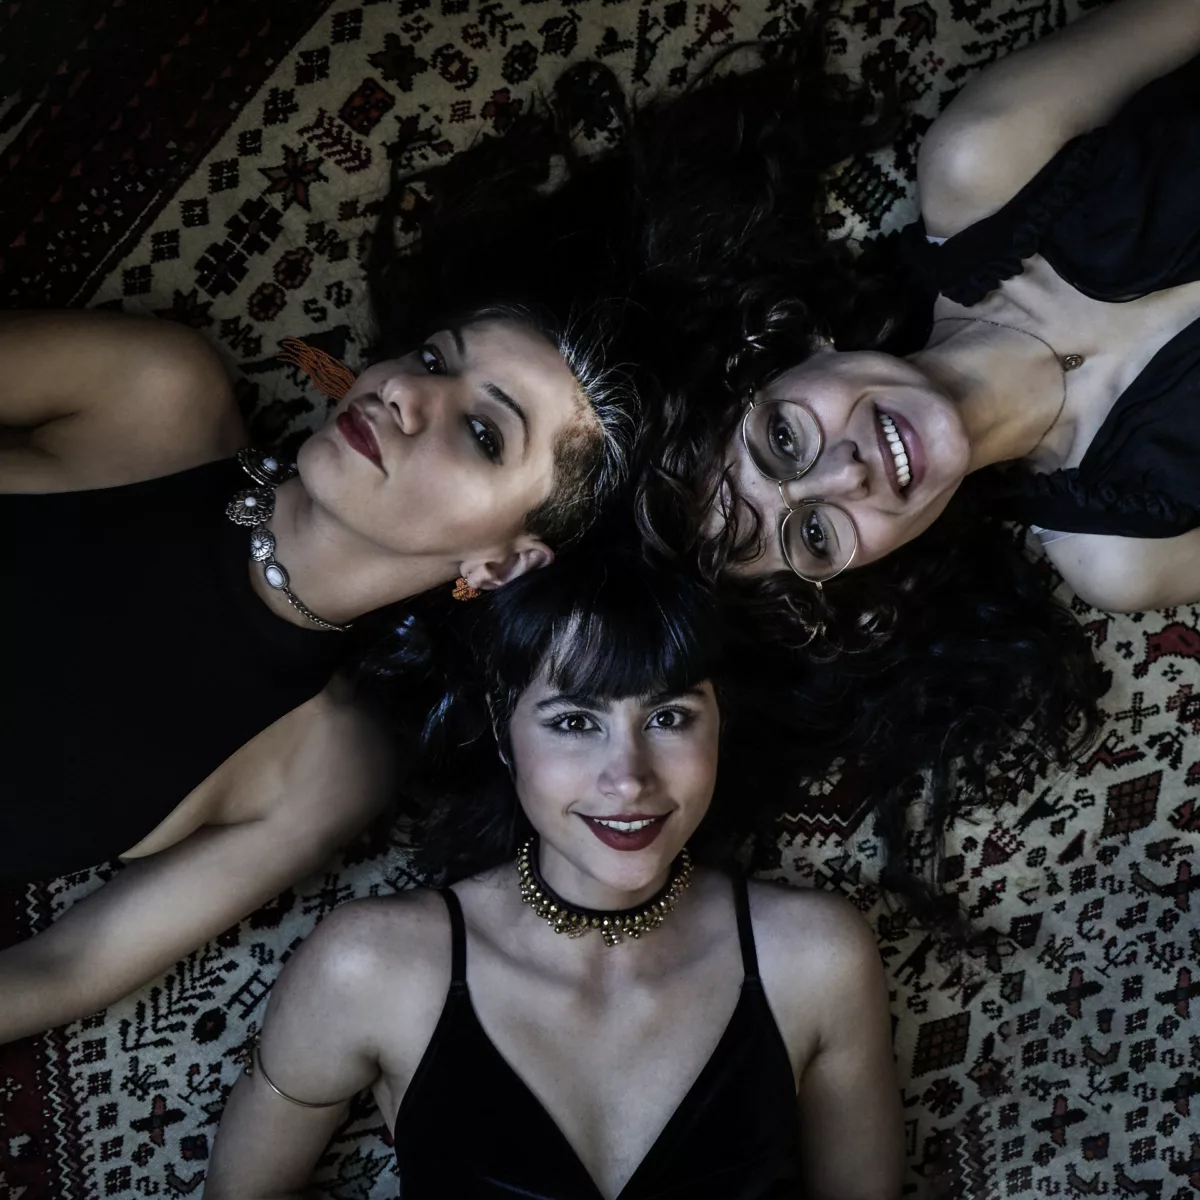 Das Bild zeigt drei junge Frauen, die auf dem Rücken liegen und in die Kamera schauen. Alle drei haben langes dunkles Haar und tragen schwarze ärmellose Oberteile. Sie liegen auf einem gemusterten Teppich.